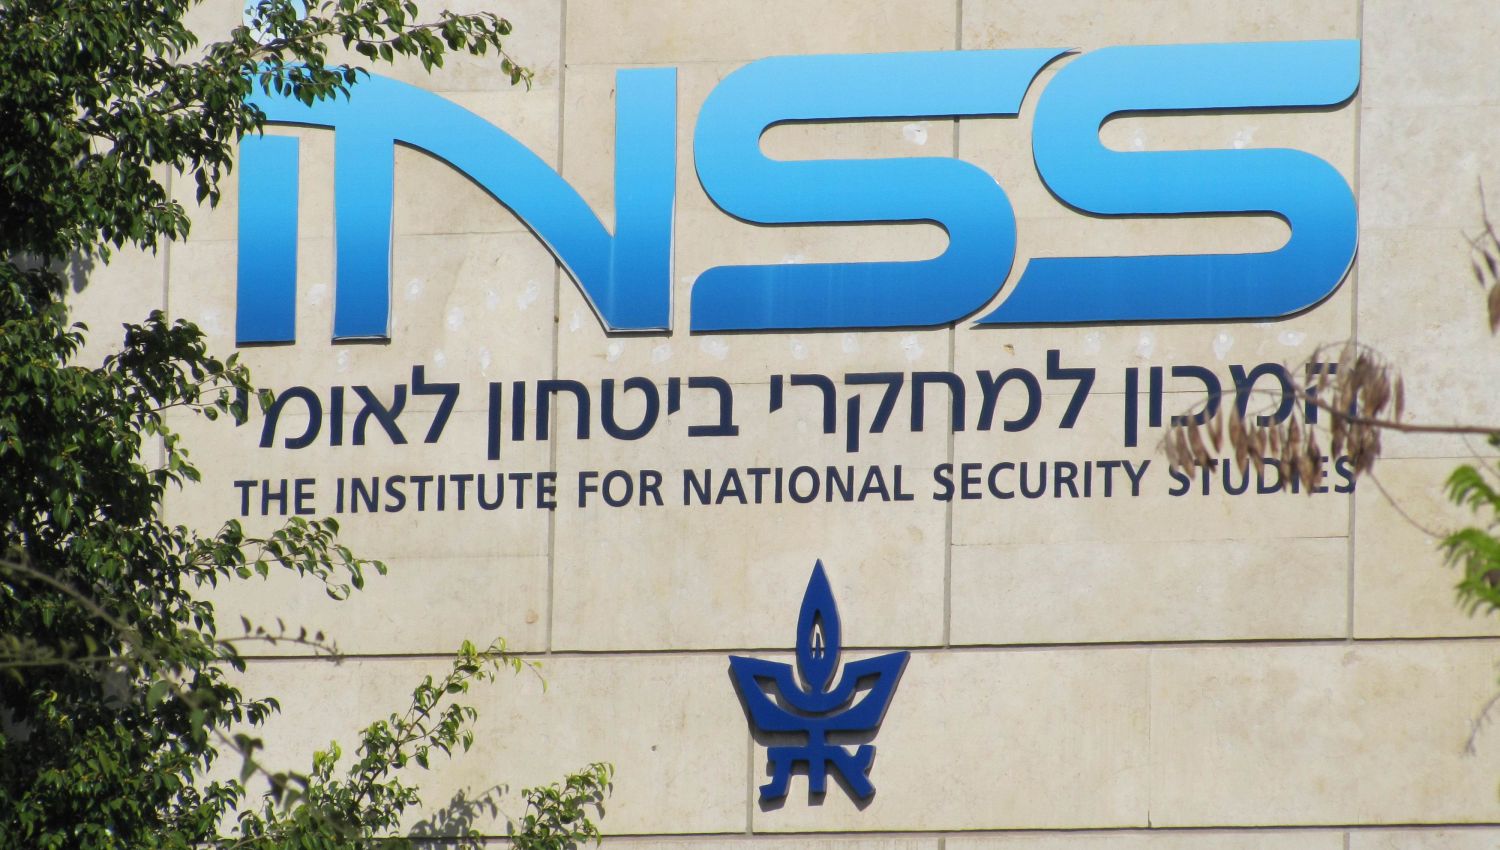 معهد دراسات الأمن القومي الإسرائيلي: المعركة بين الحروب هشة!